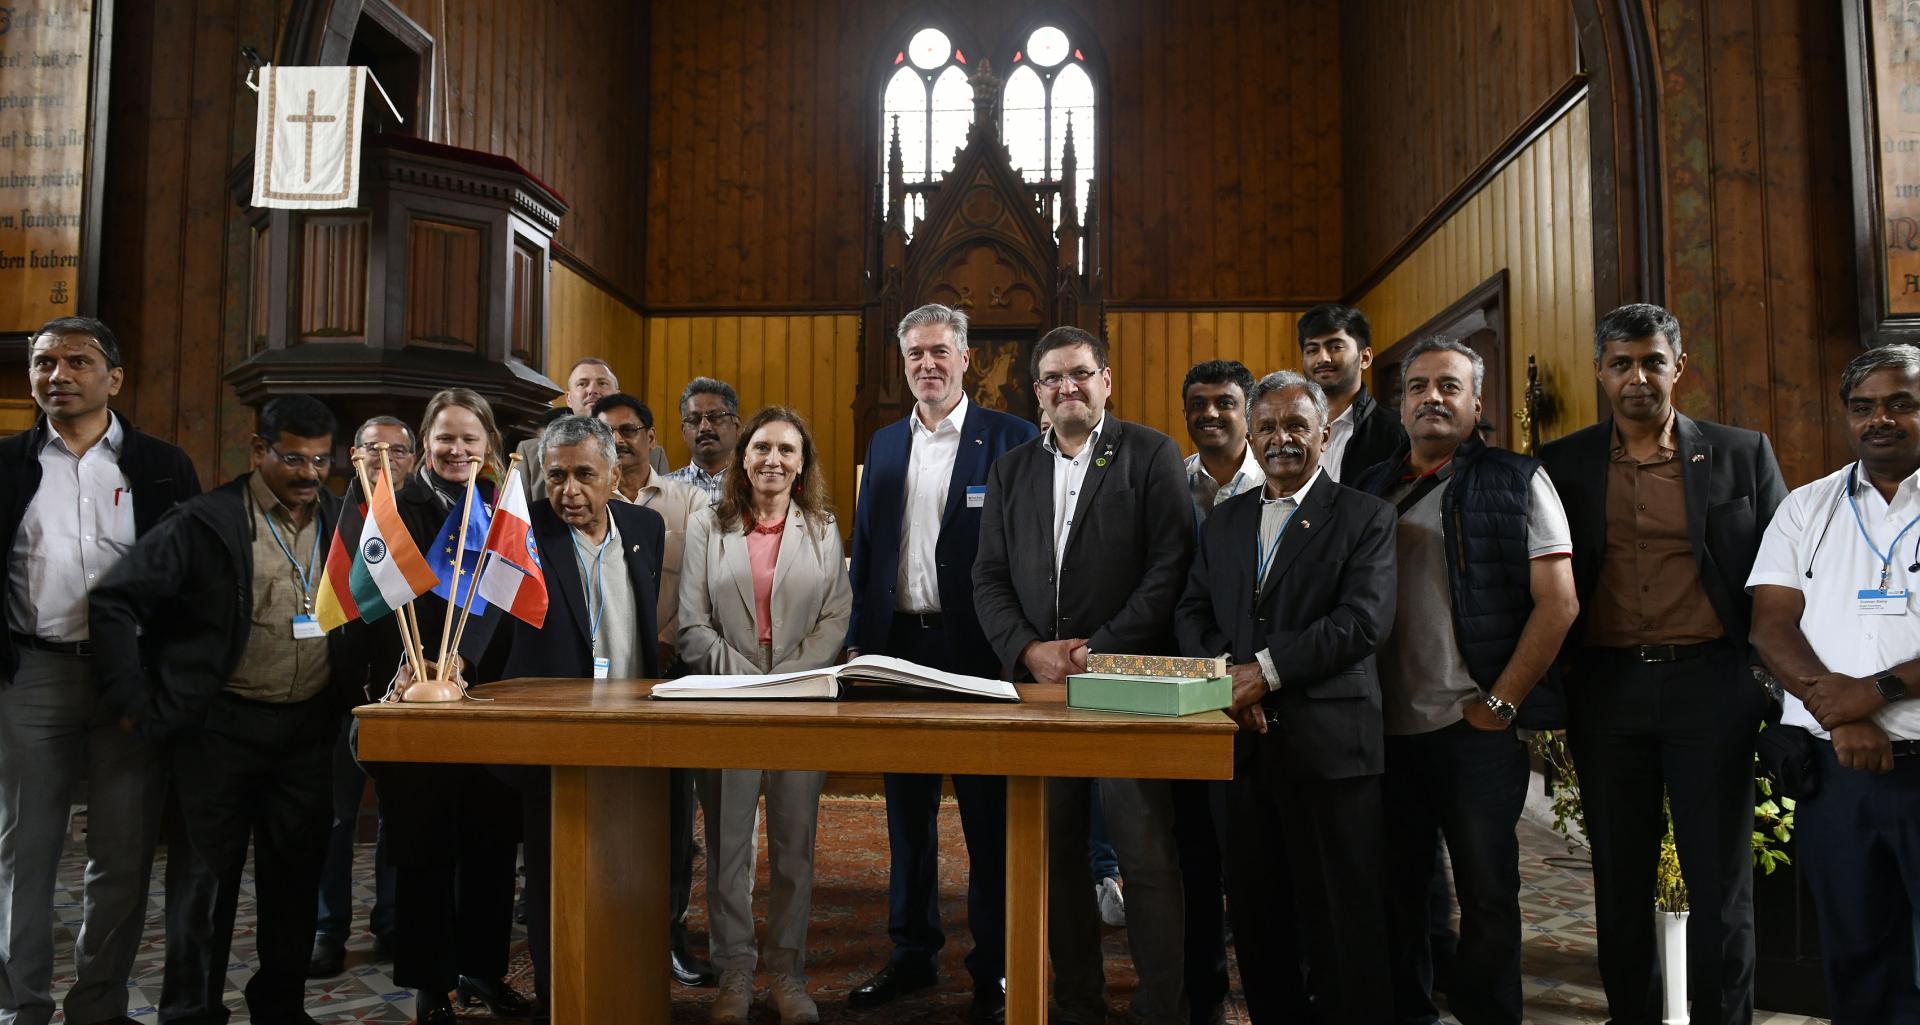 chz Indien Delegation 50 Gruppenfoto Holzkirche mit Buch